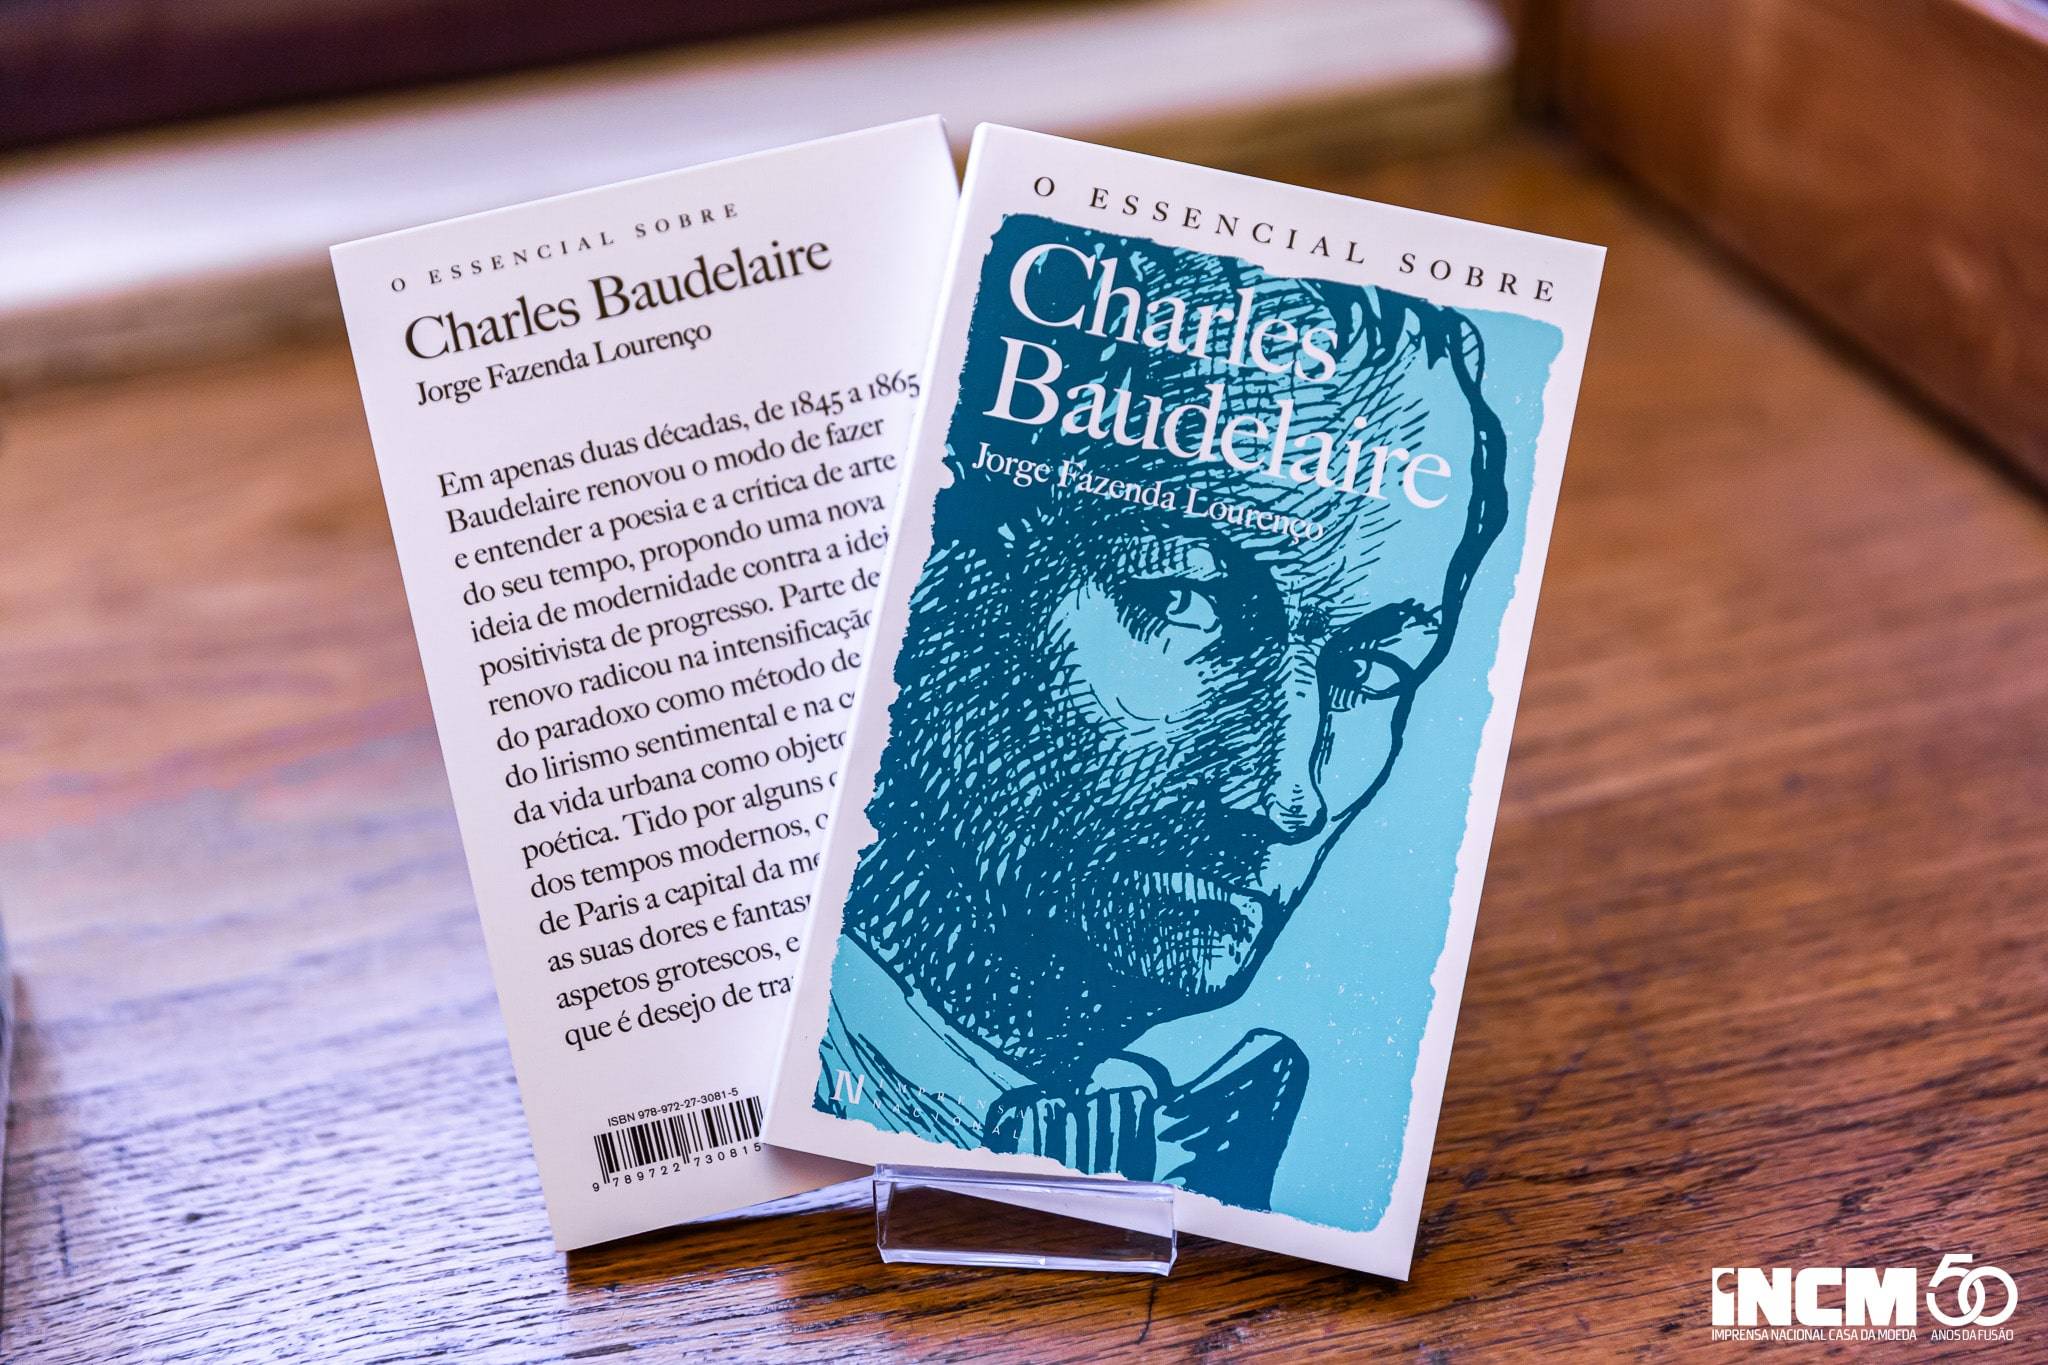 Apresentado O Essencial sobre Charles Baudelaire, de Jorge Fazenda Lourenço